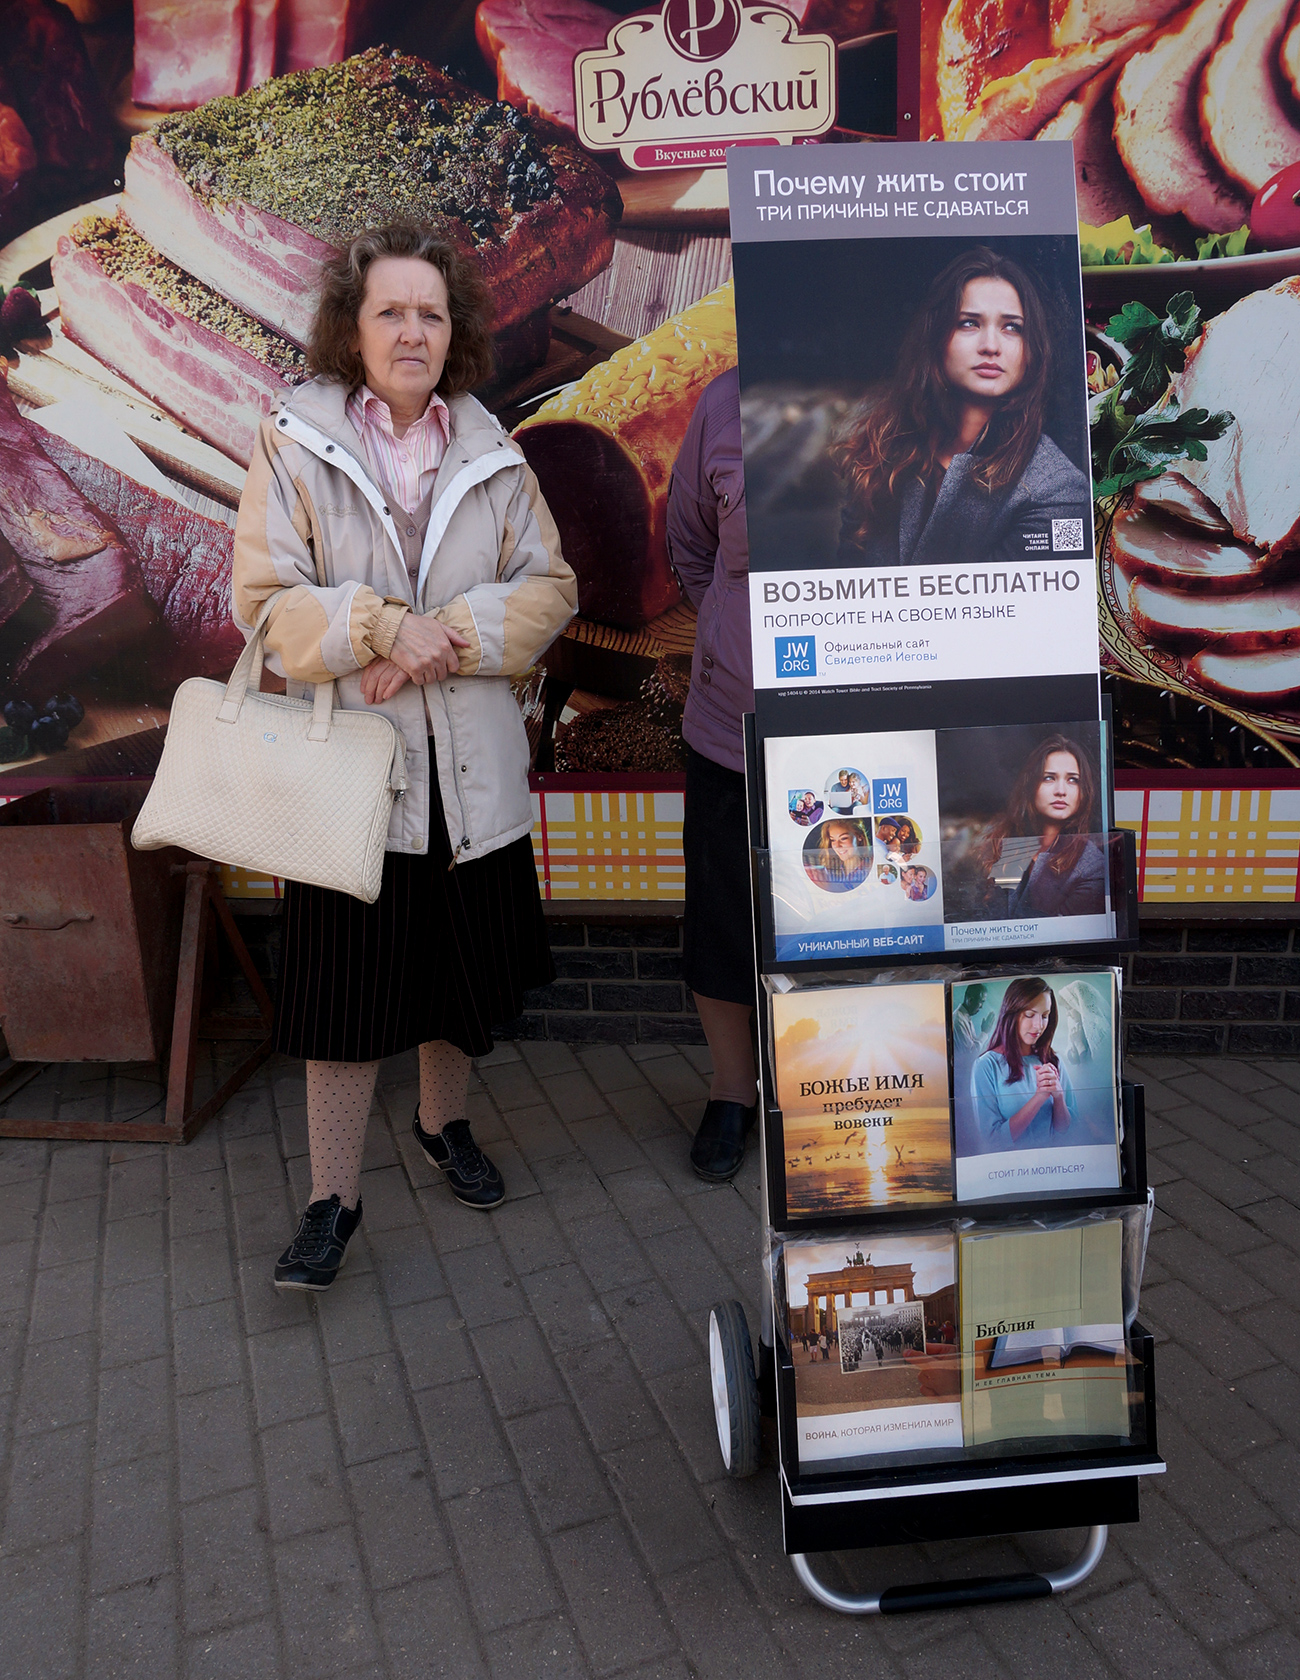 Ruskinja na ulici nudi knjižice Jehovinih svjedoka. / Izvor: Aleksandar Artemenkov / TASS